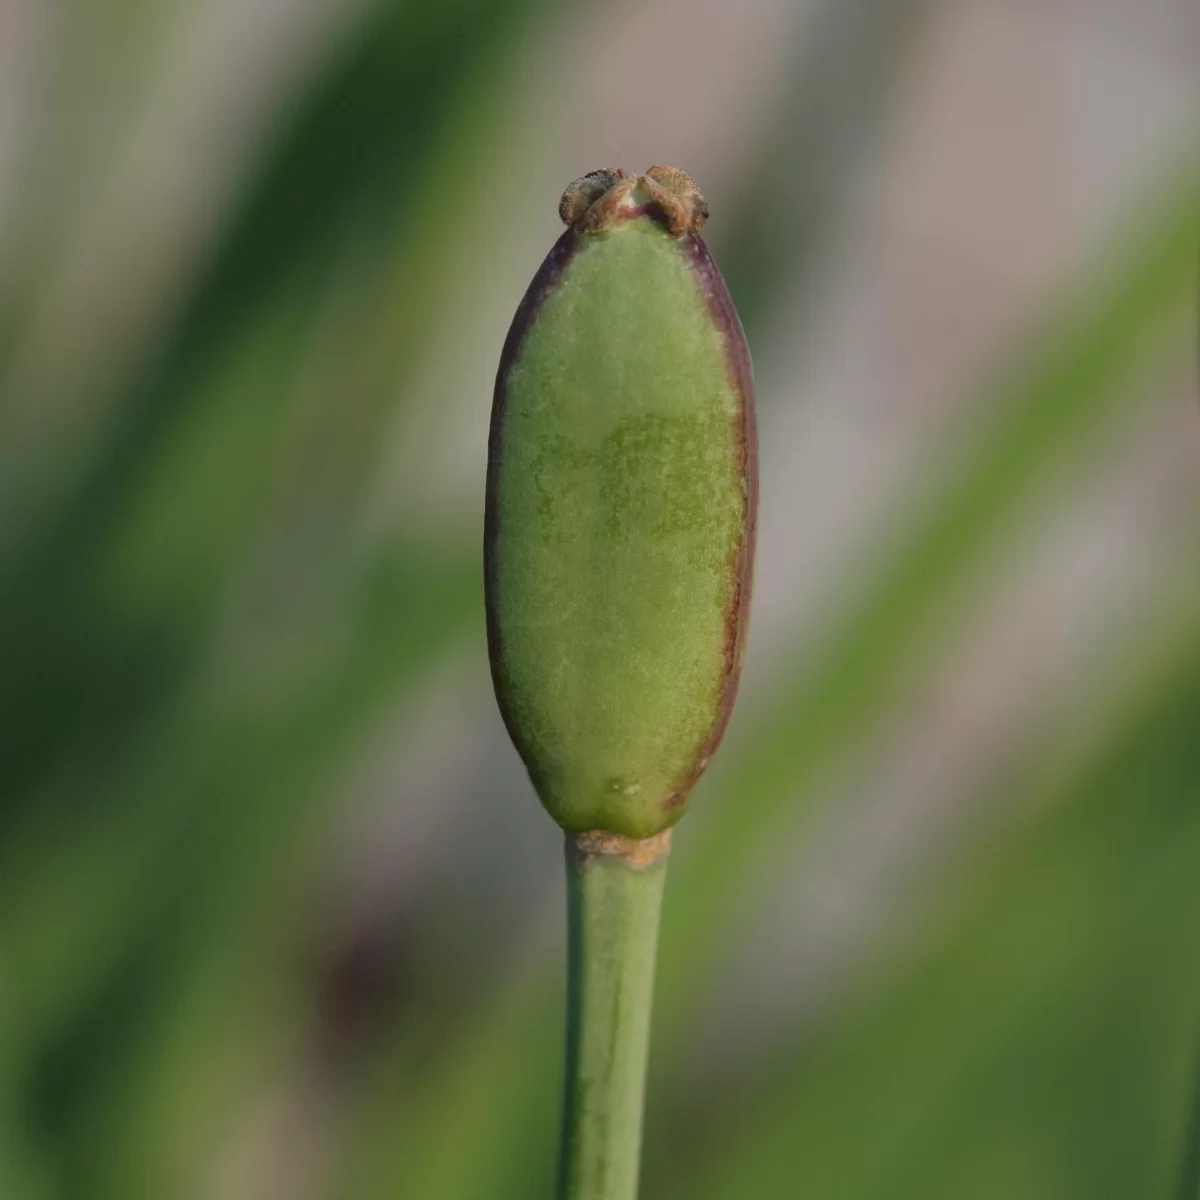 Tulipán zahradní. Pořízeno 05.06.2022 20:06 - František Matoušek